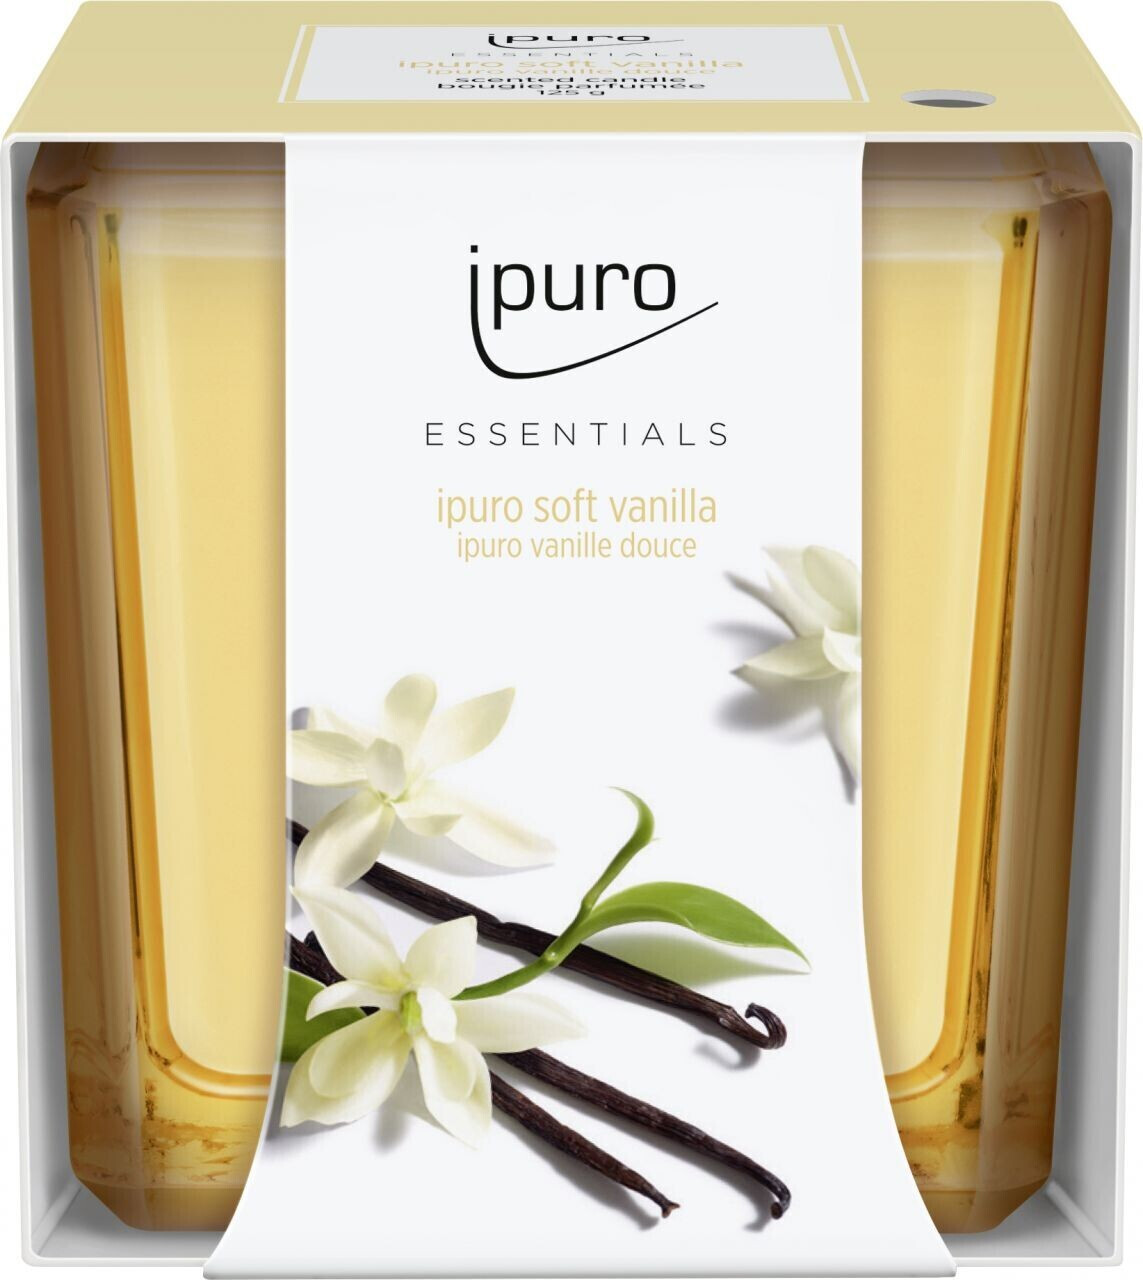 Ipuro Duftstäbchen Essentials Soft Vanilla 200 ml kaufen? Bei